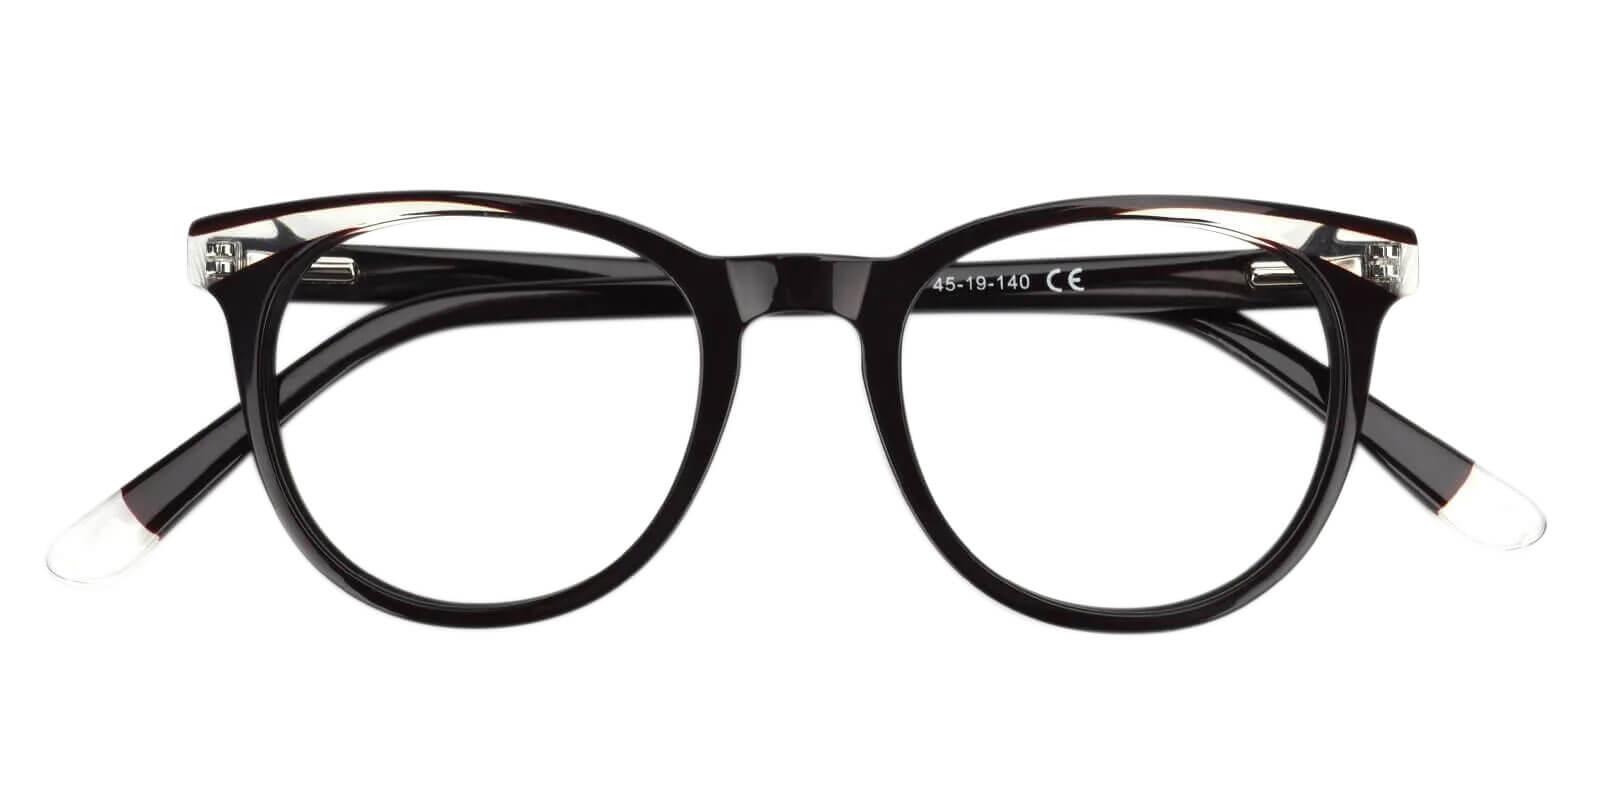 Dimona Black Acetate Eyeglasses , UniversalBridgeFit Frames from ABBE Glasses